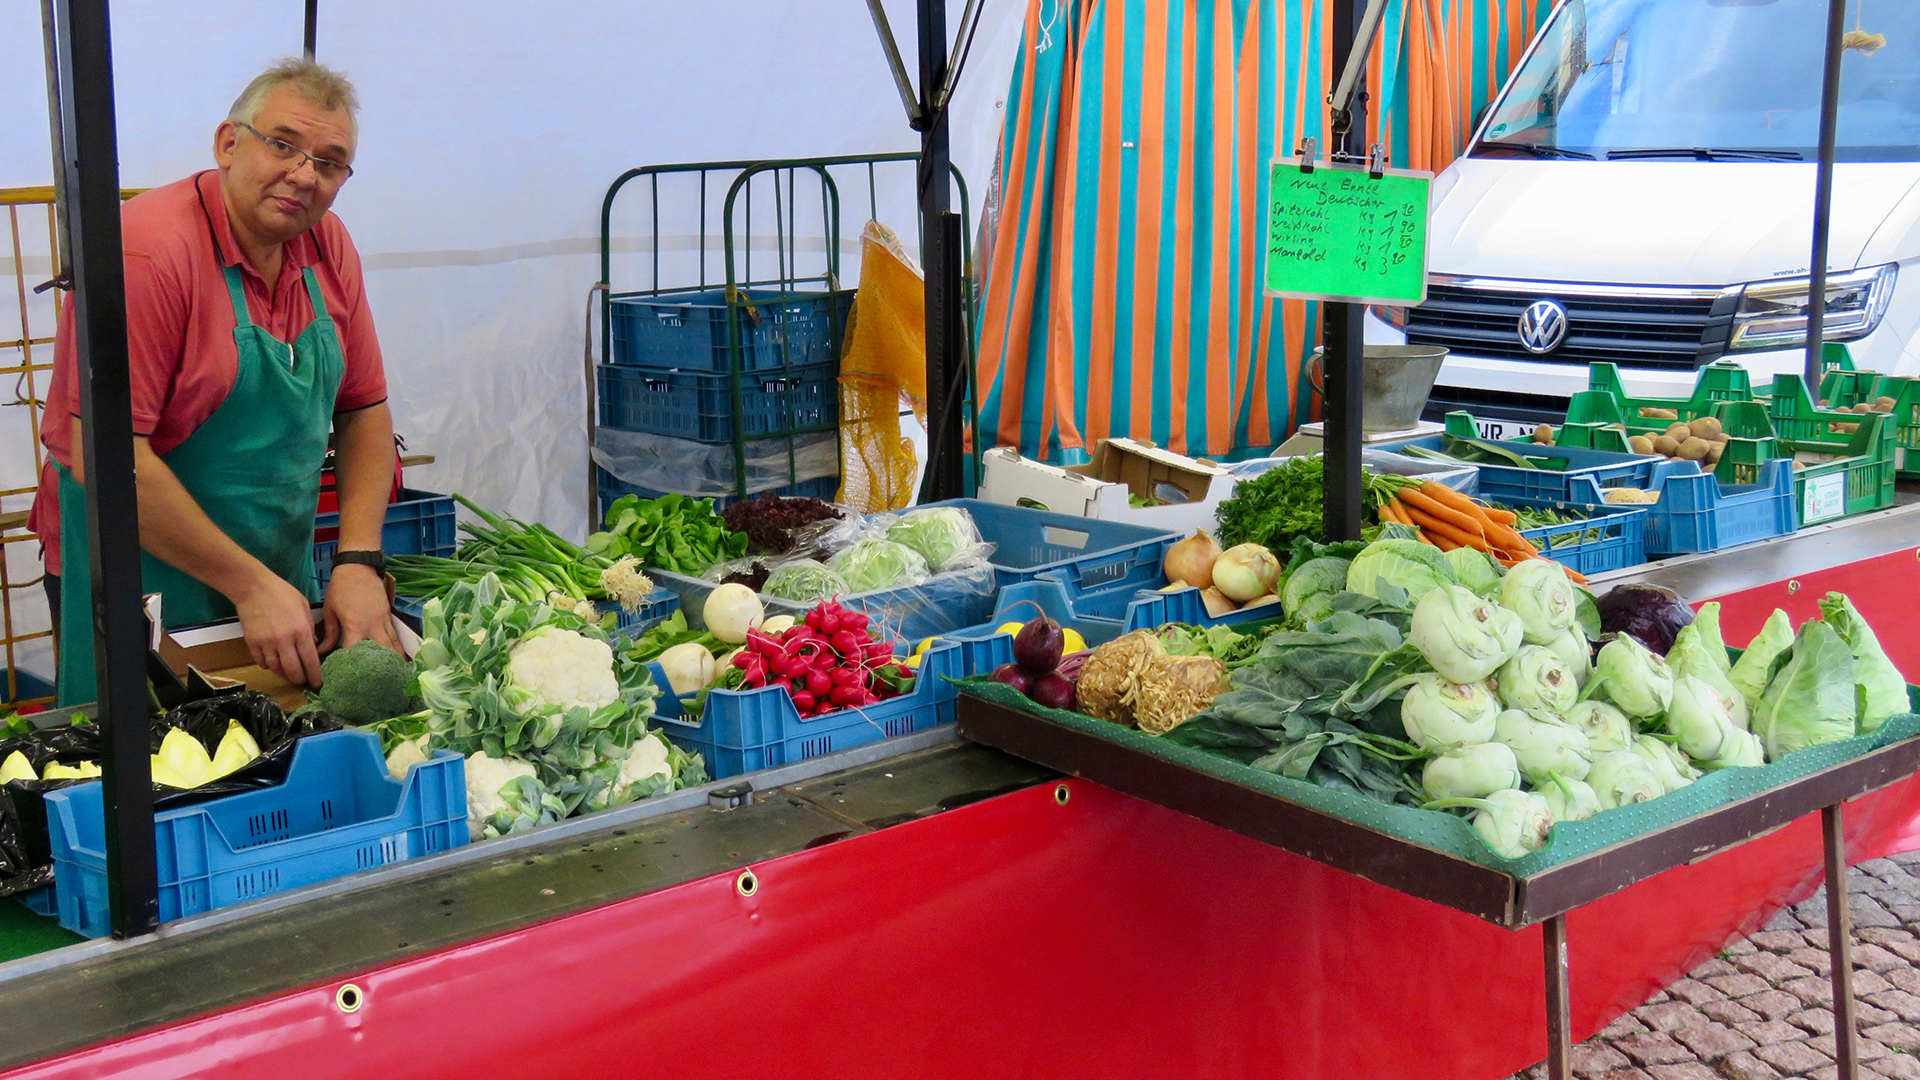 Auf einem Marktstand liegen verschiedene Gemüsesorten.